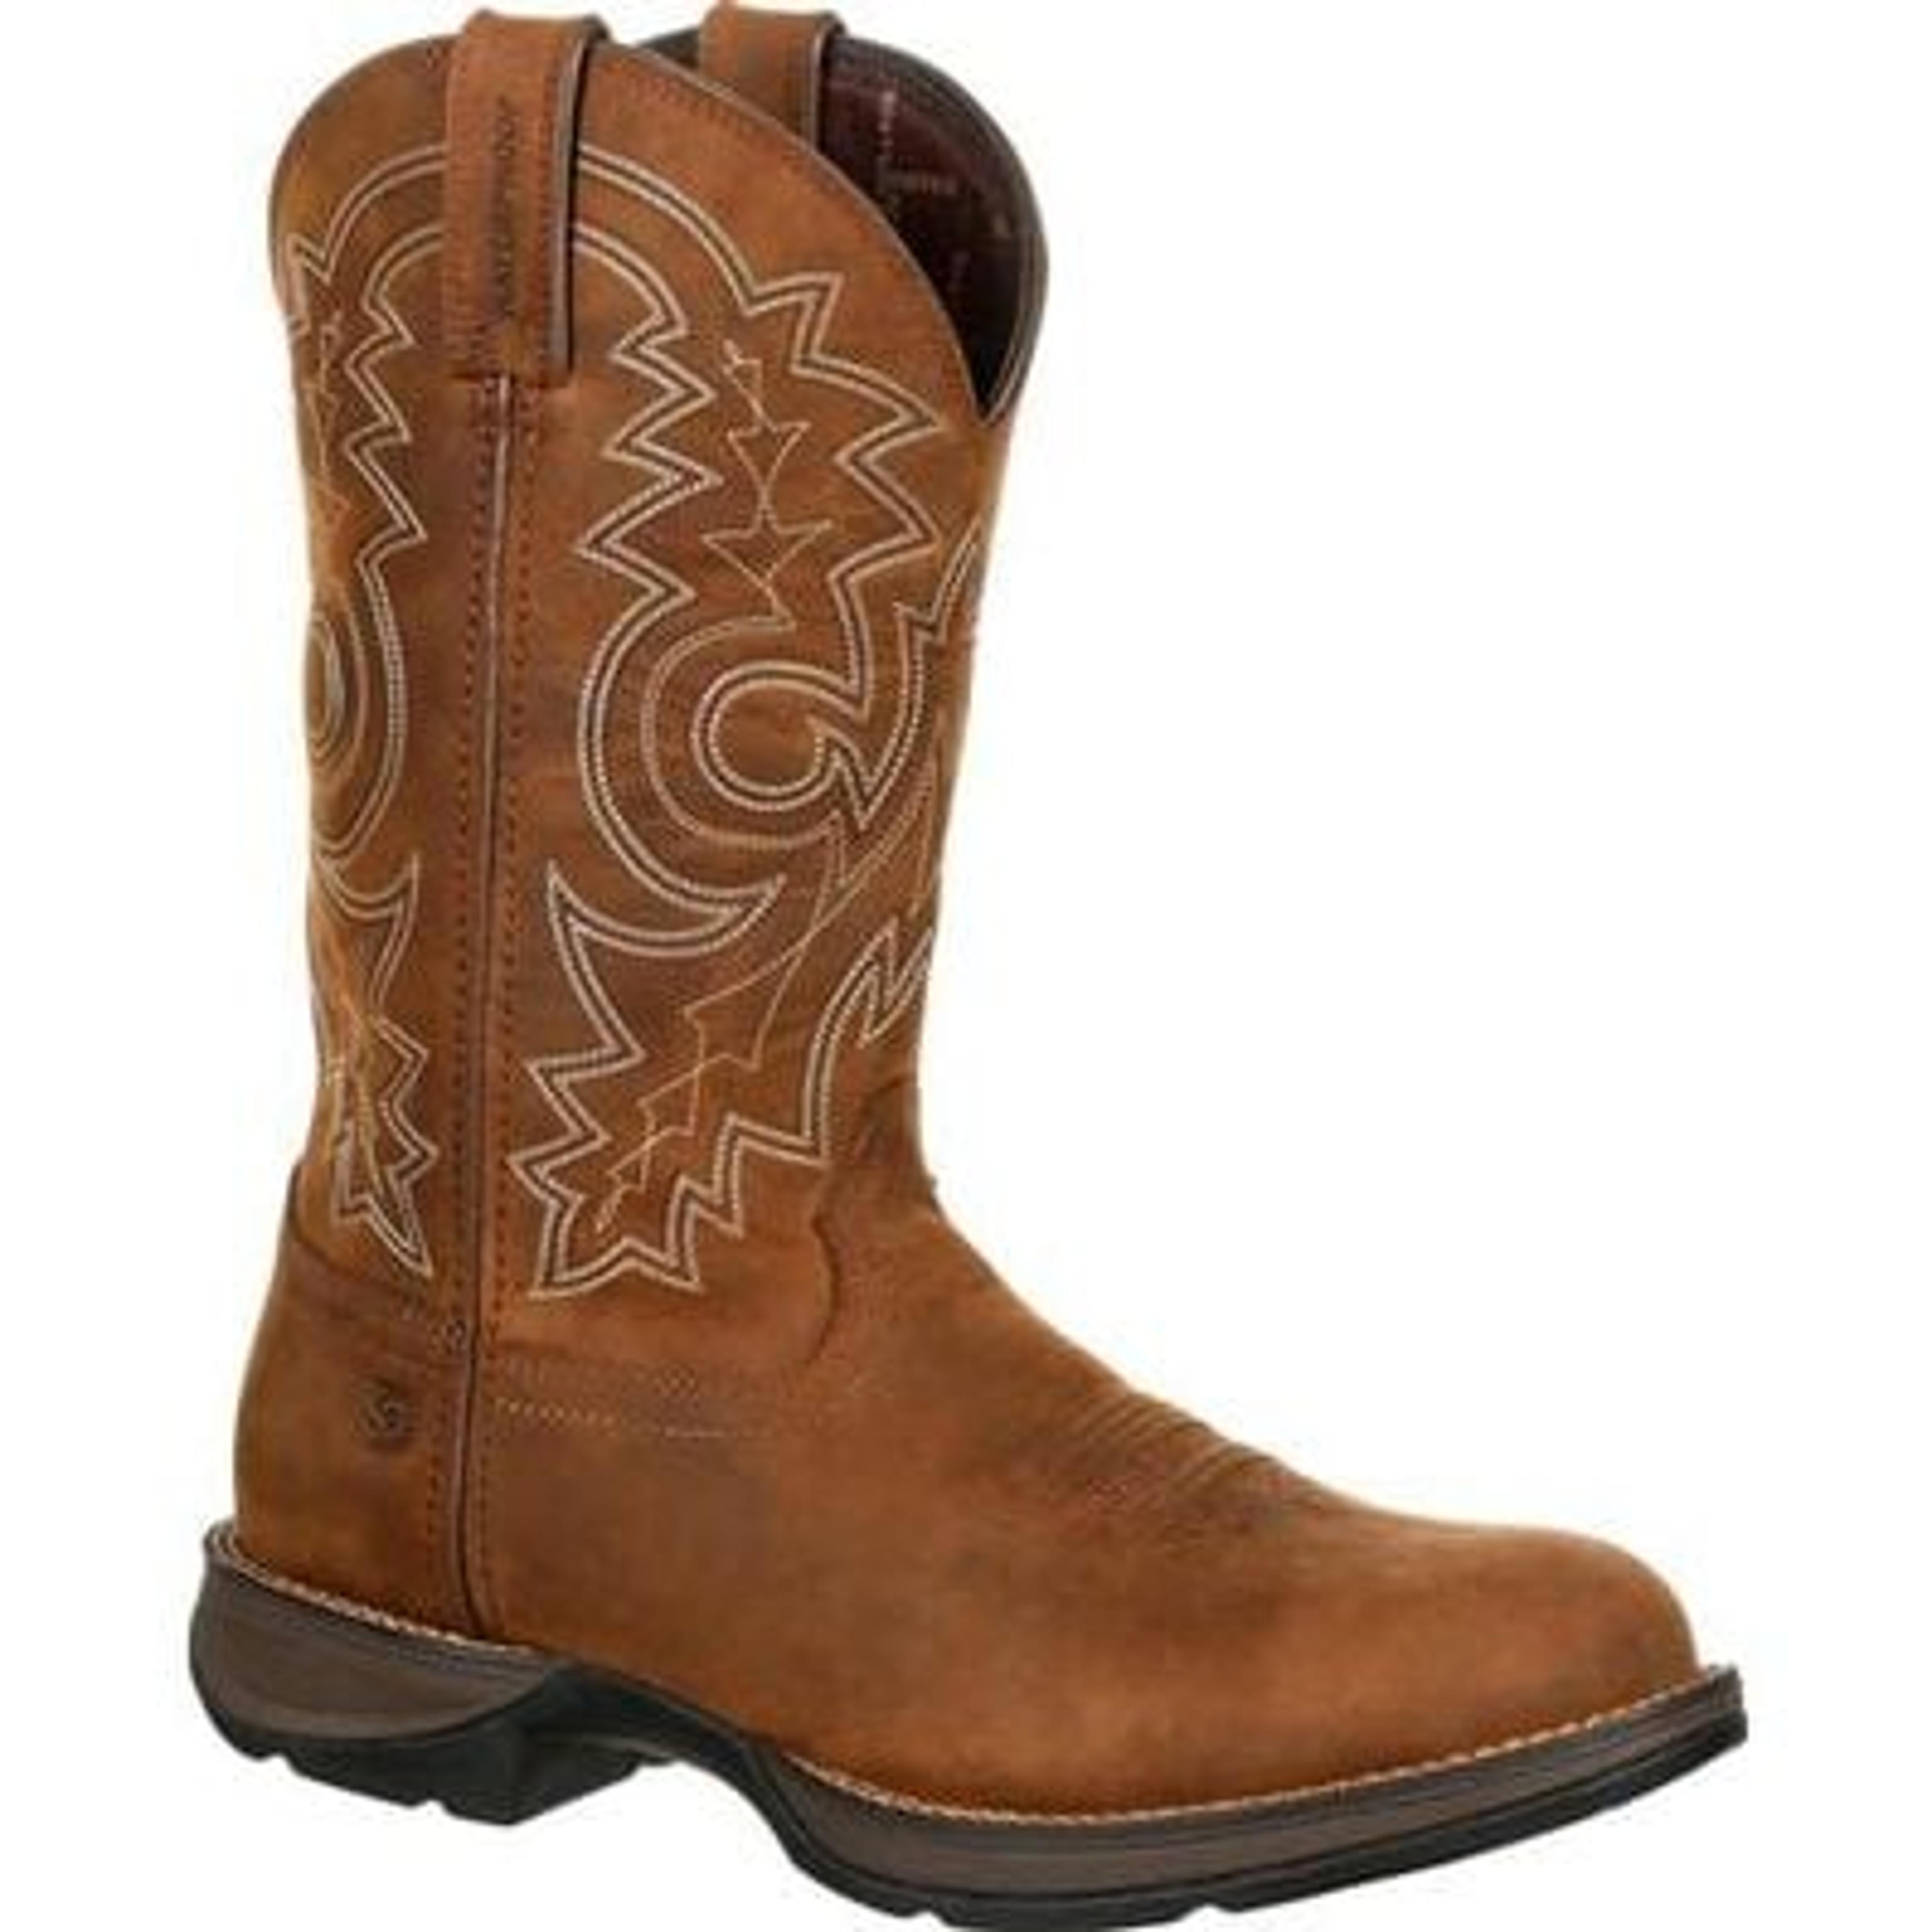  Rebel Toe Waterproof Western Boots